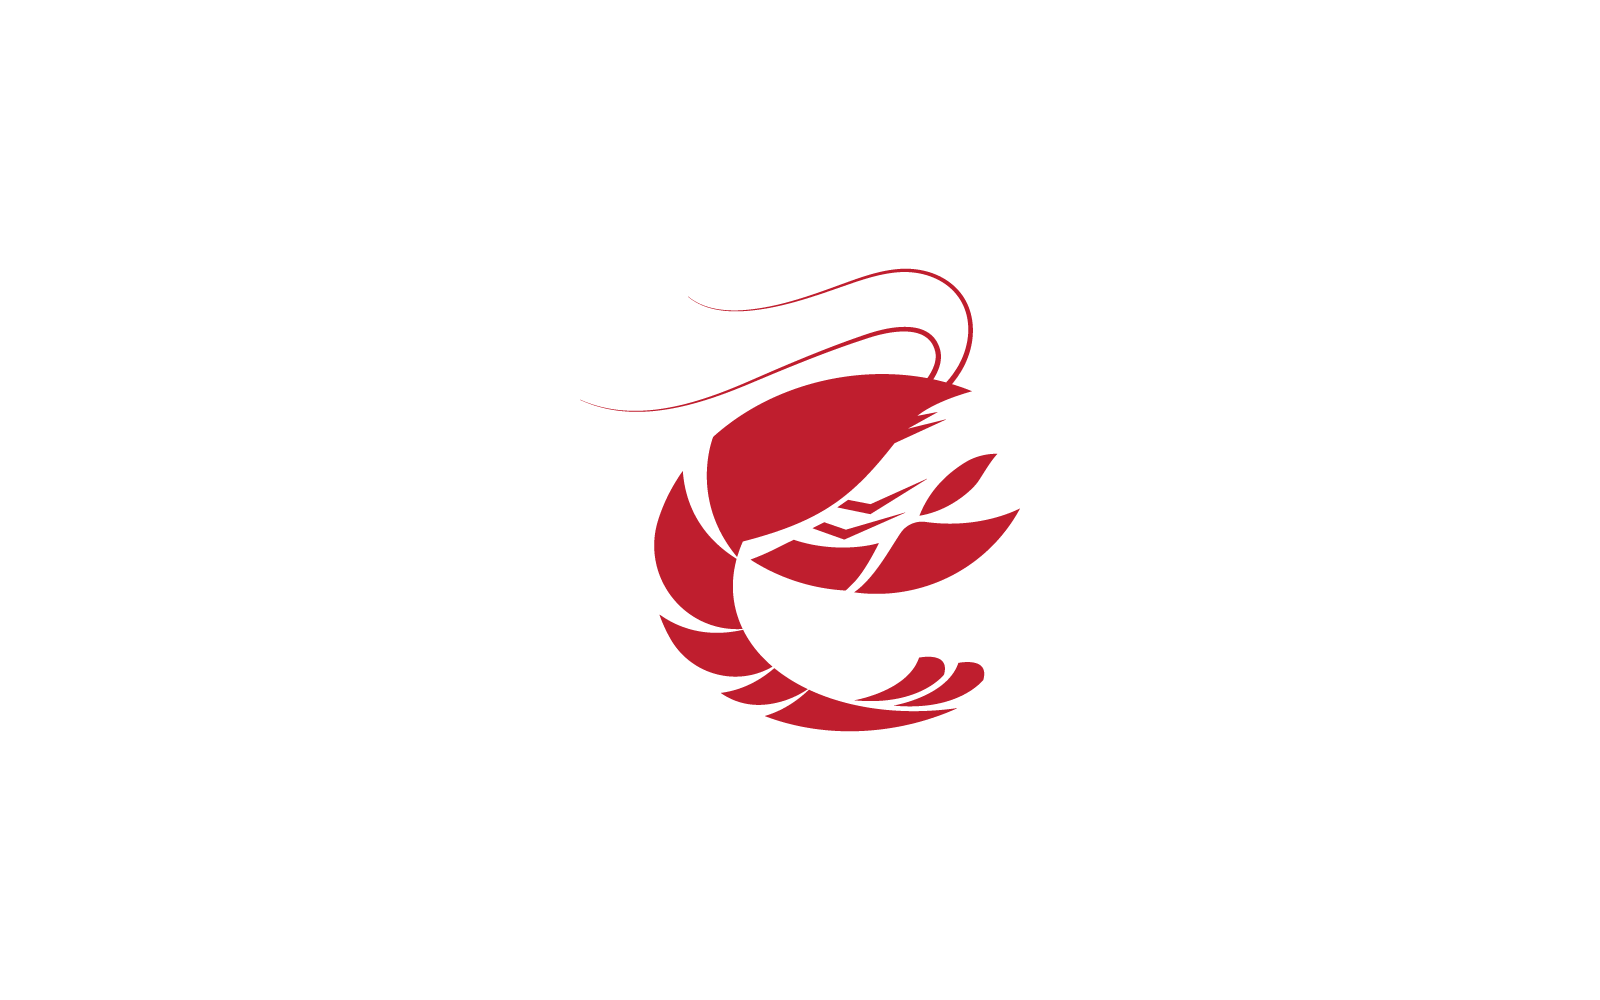 Lobster logo illustration vector illustration template